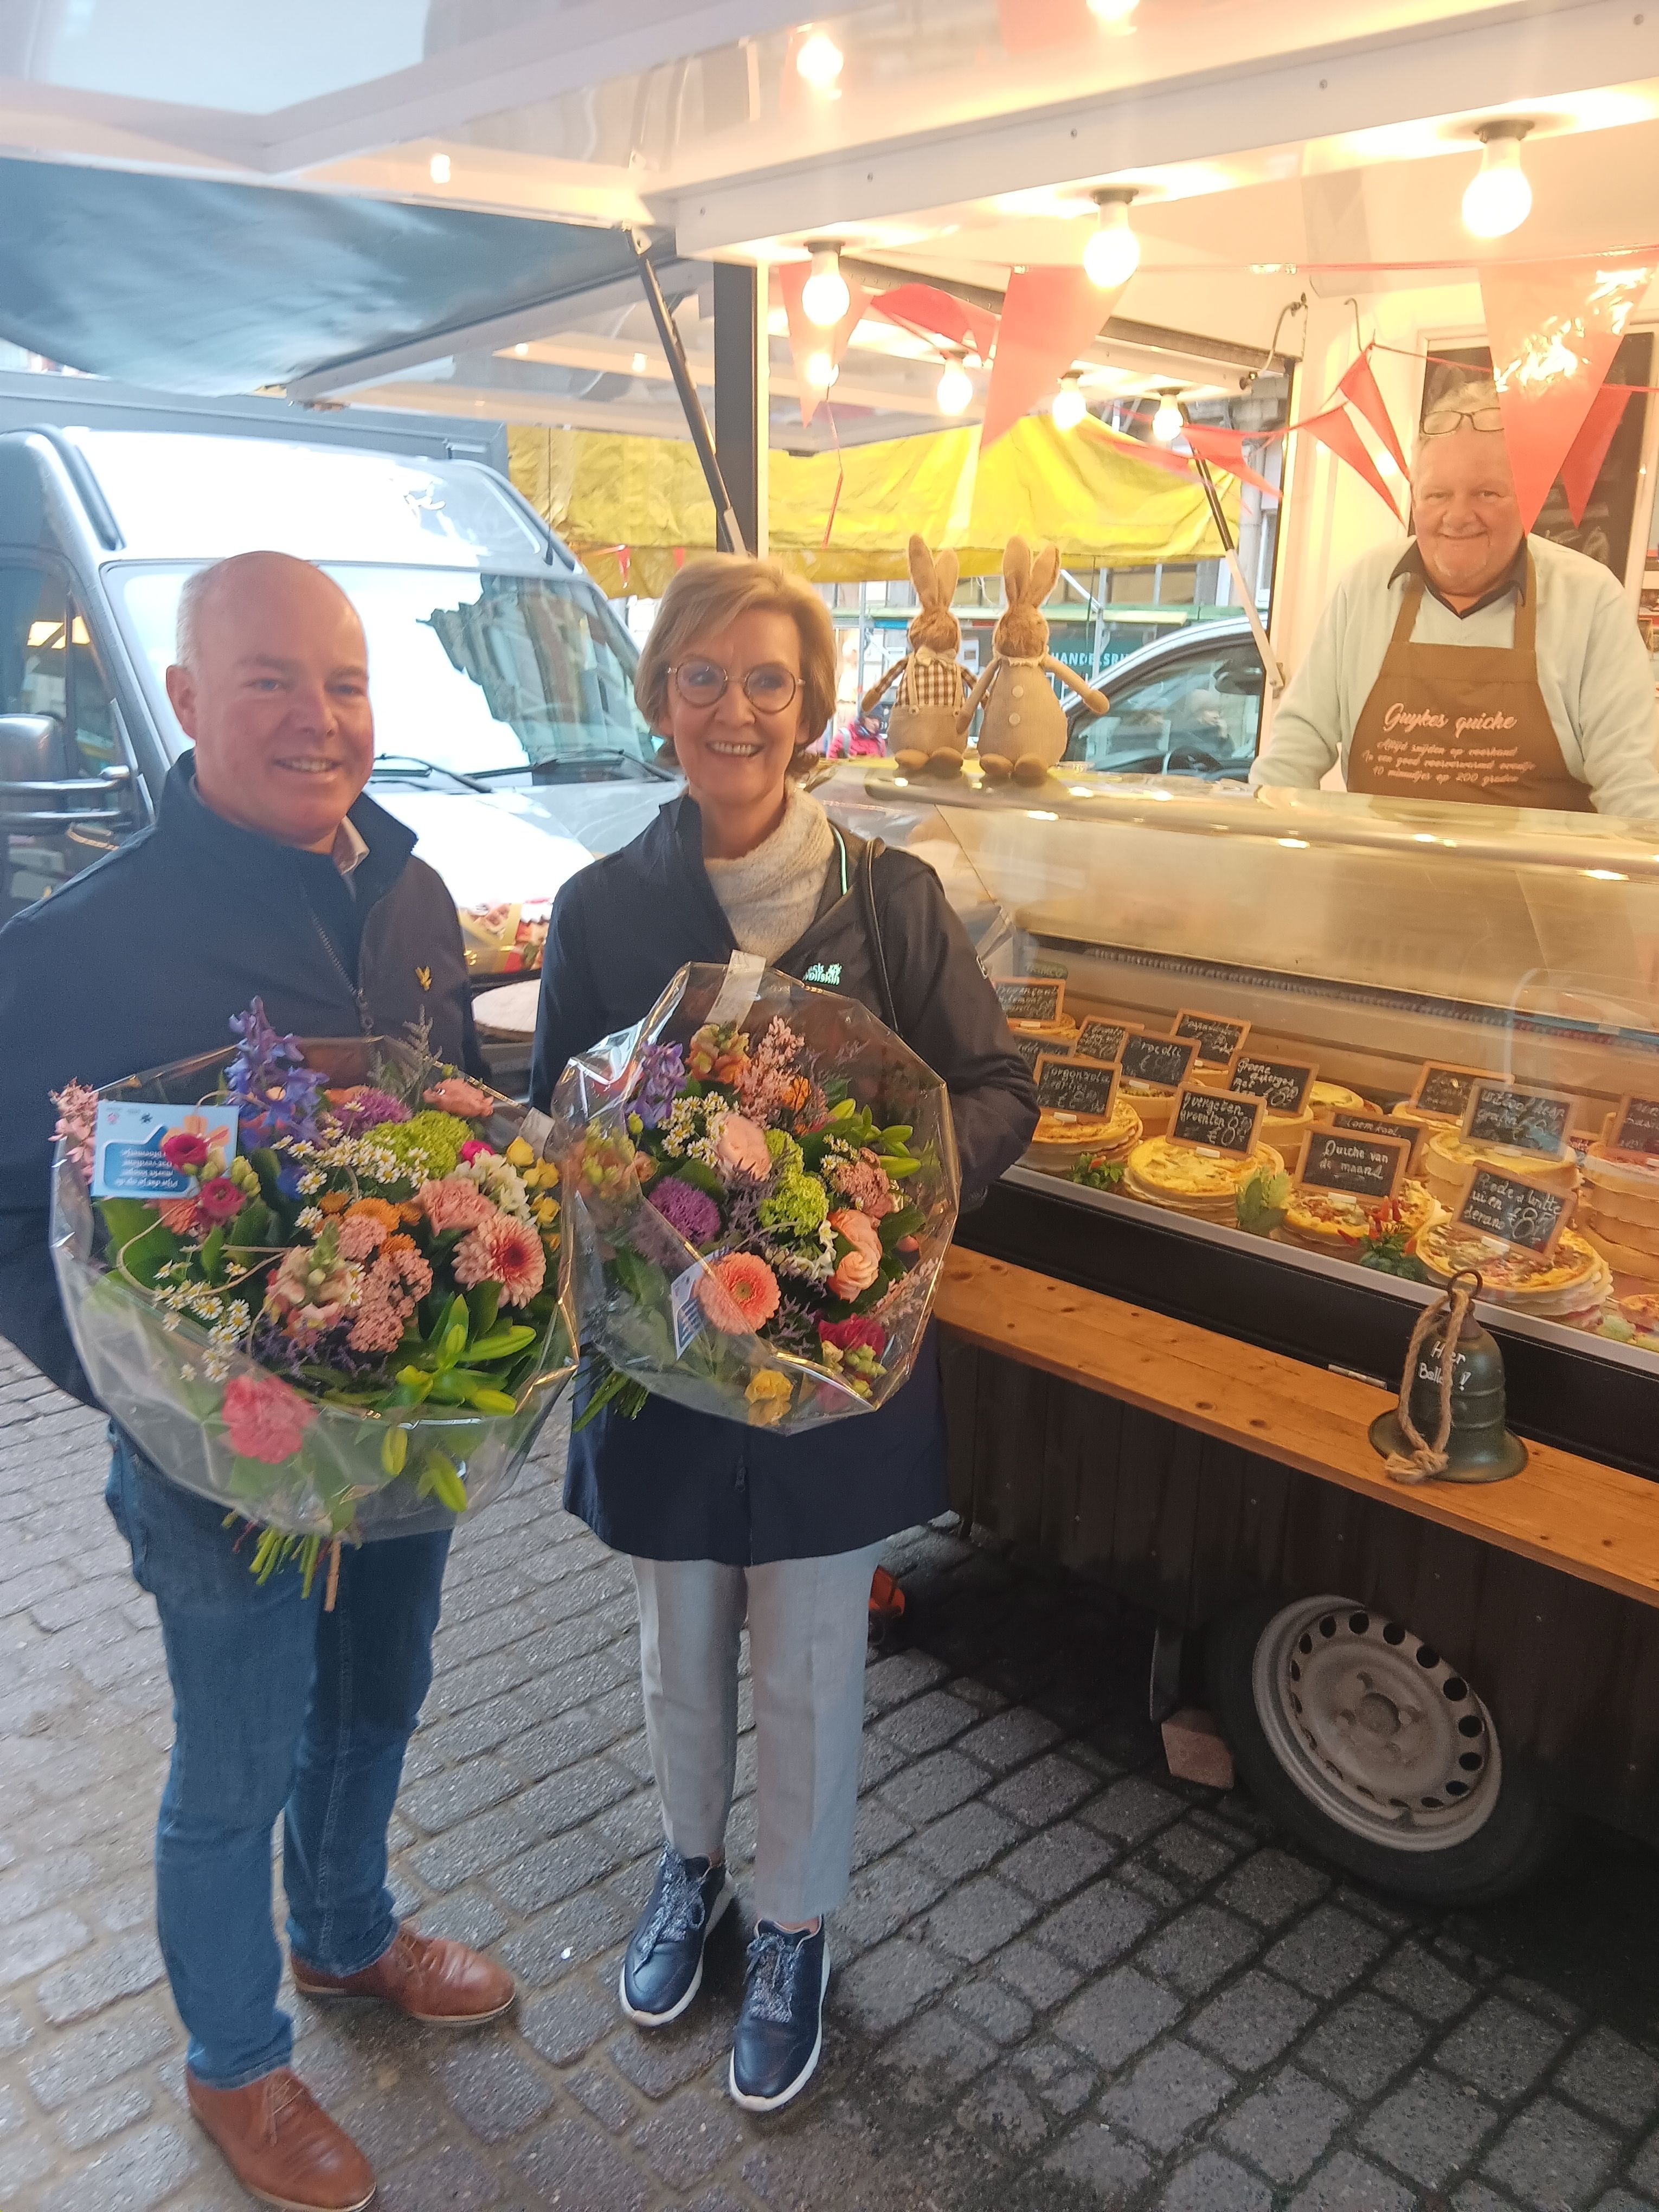 Op 30 maart lanceerden gedeputeerde Ann Schevenels en schepen Johan Geleyns de Maand van de Markt op de markt van Leuven.